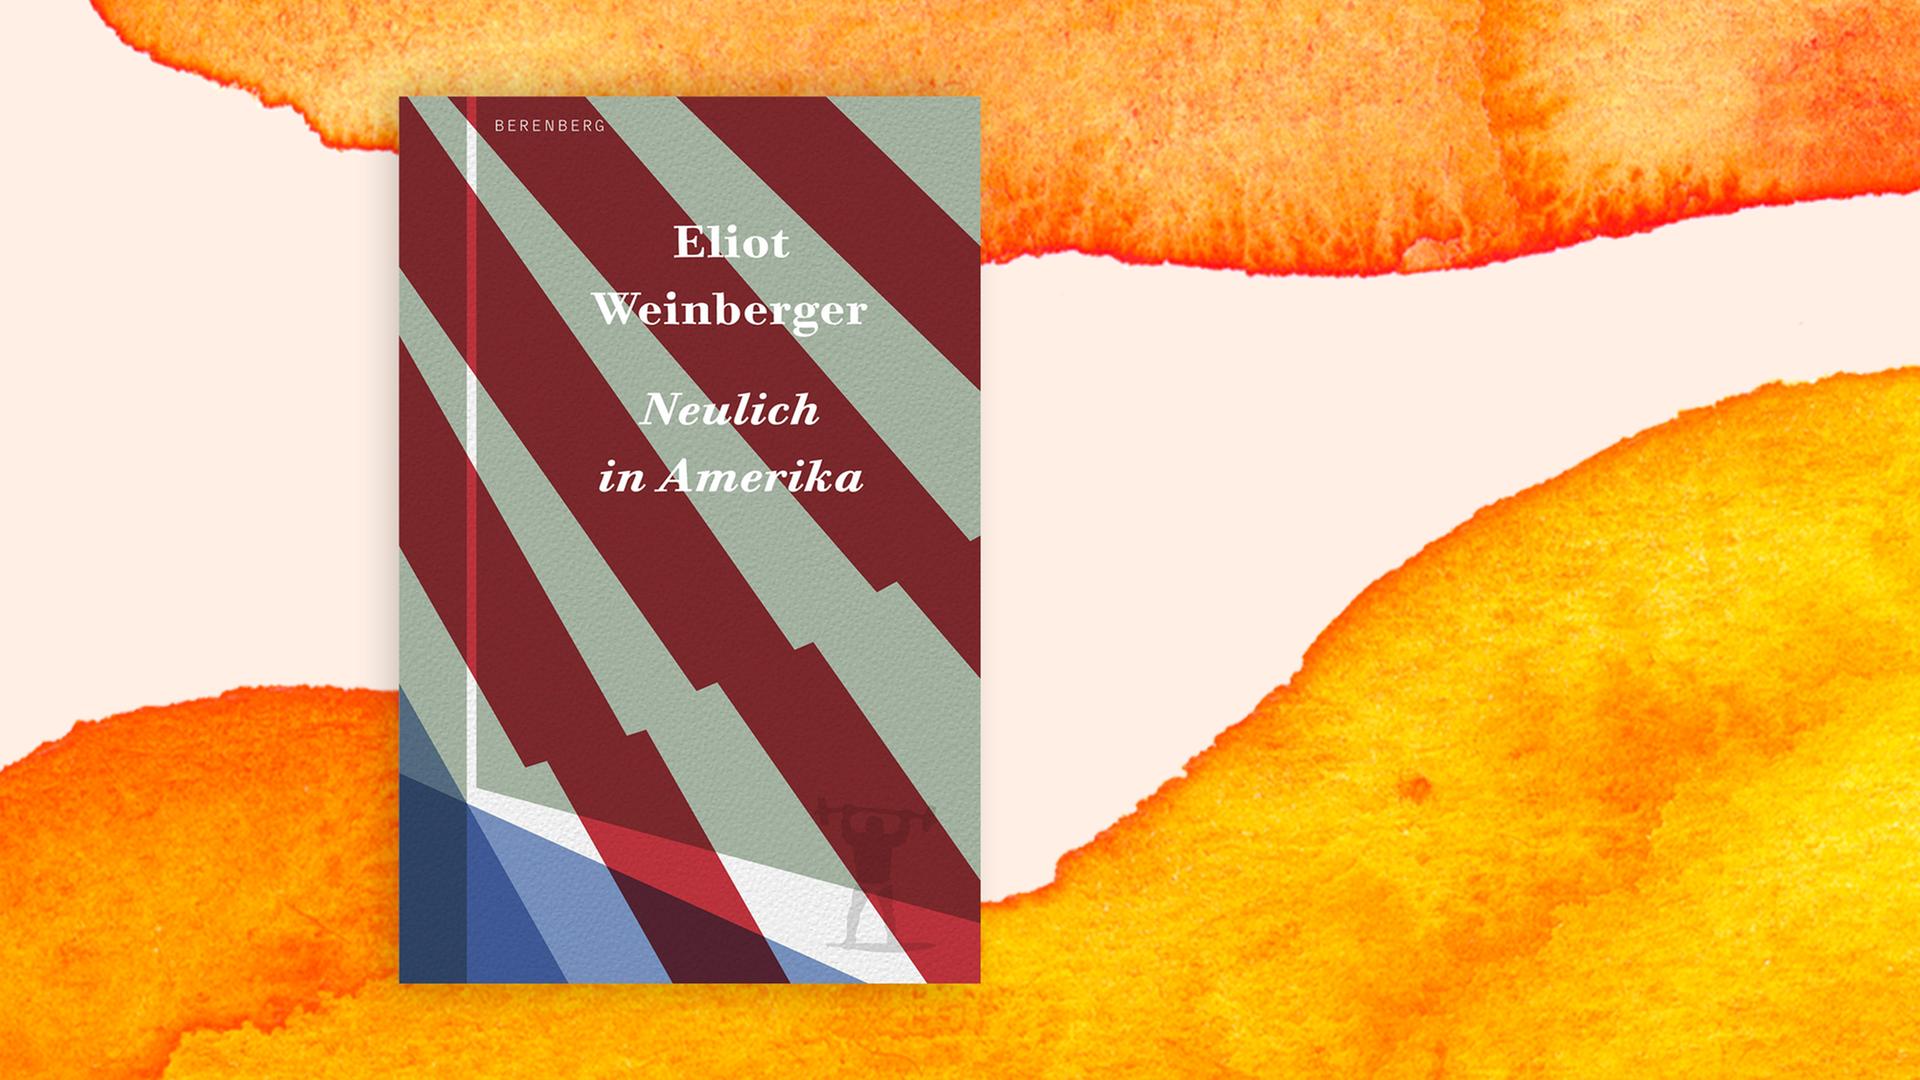 Das Cover von Eliot Weinbergers Buch "Neulich in Amerika" auf orange-weißem Grund. Das Cover zeigt einen Teil der roten und weißen Streifen der Flagge der USA.